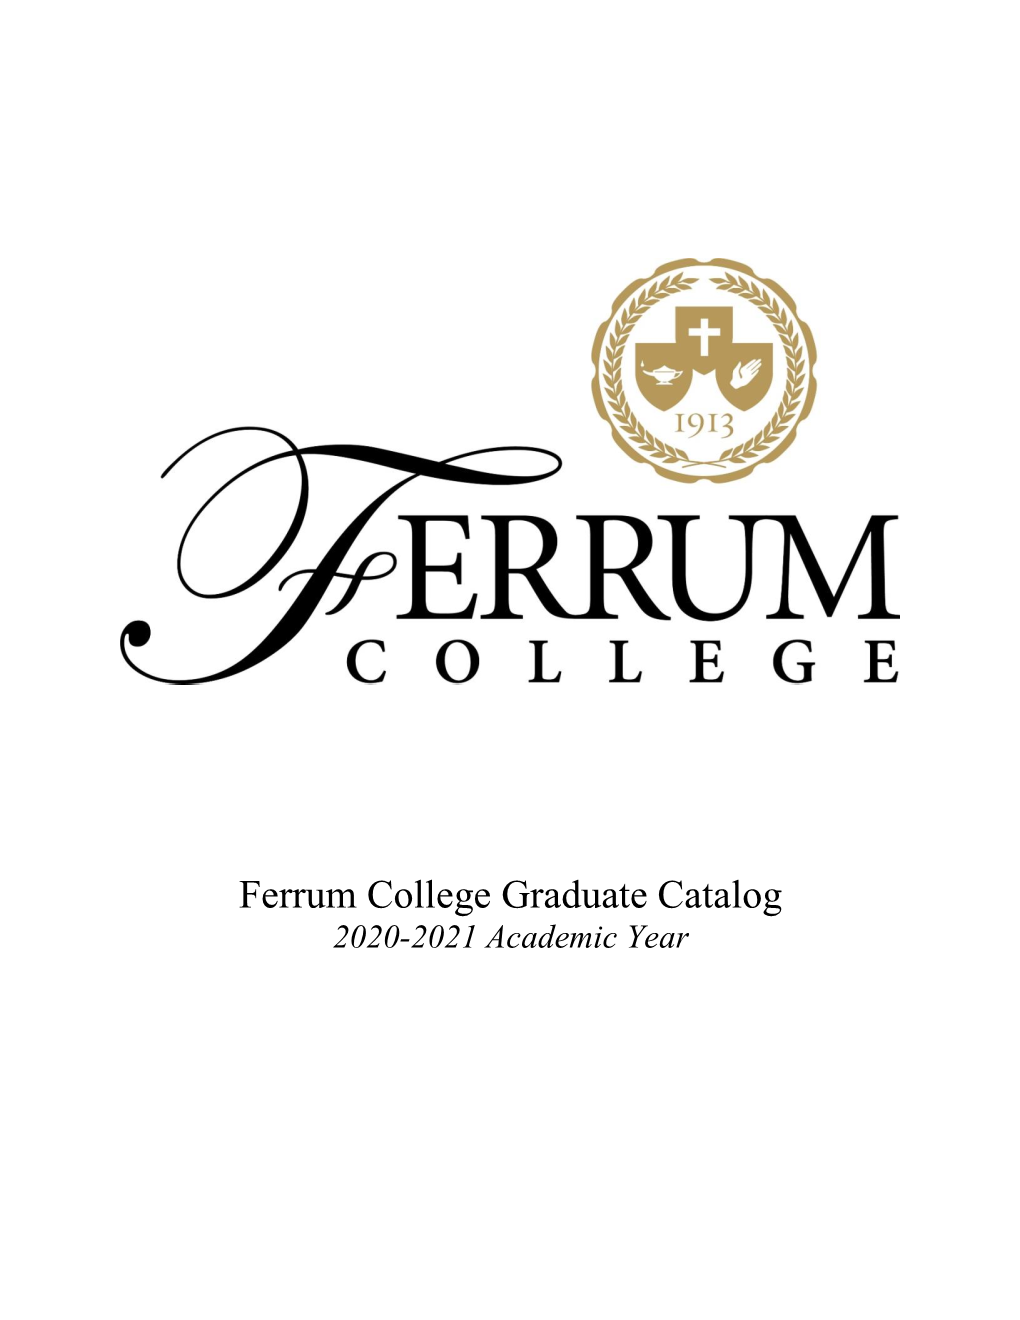 Ferrum College Graduate Catalog 2020-2021 Academic Year